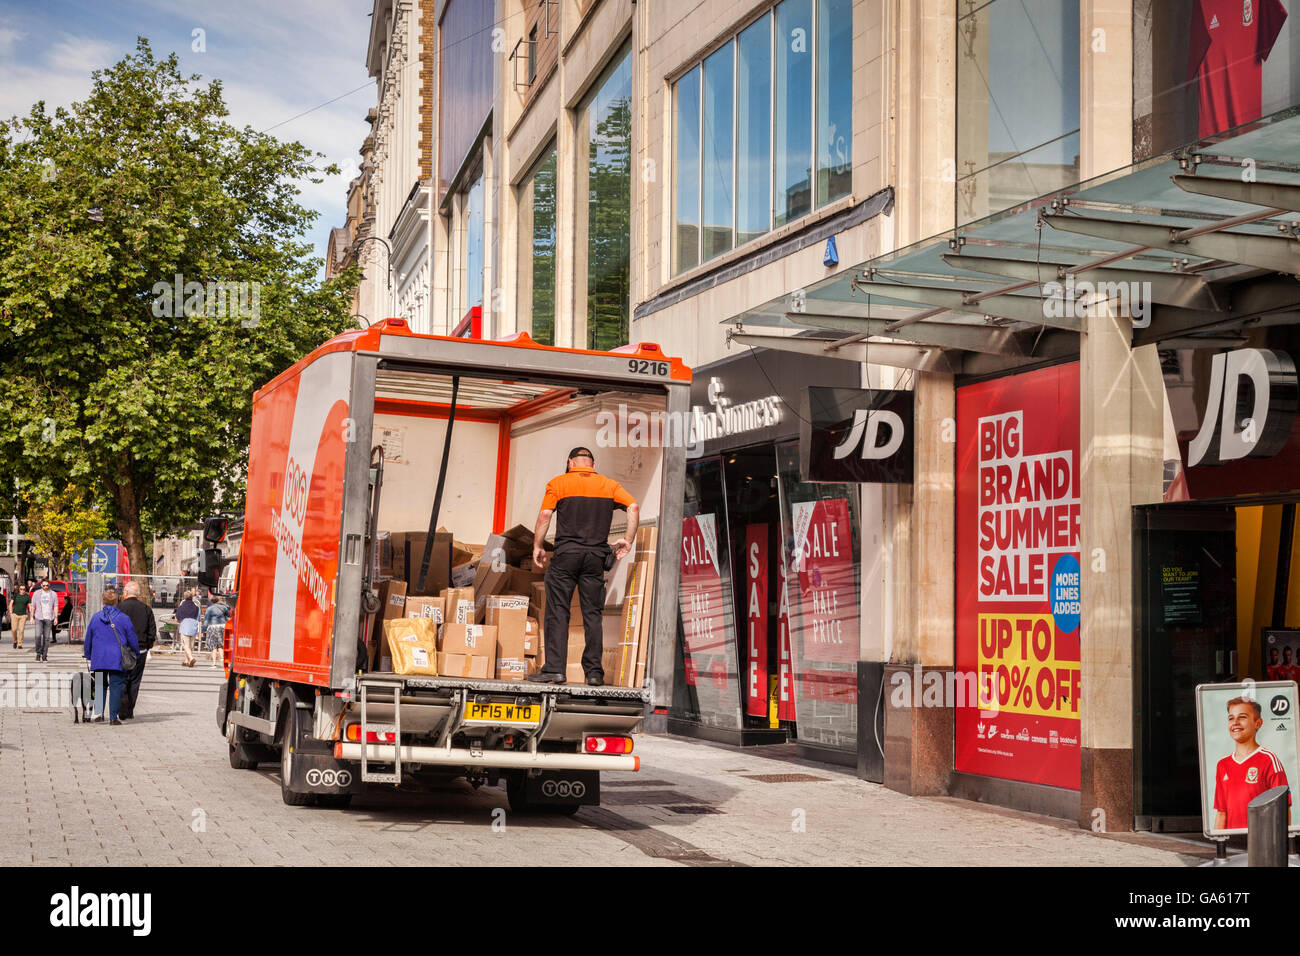 27 Juin 2016 : Cardiff, Wales, UK - TNT delivery van dans le centre-ville de Cardiff, Pays de Galles, Royaume-Uni Banque D'Images